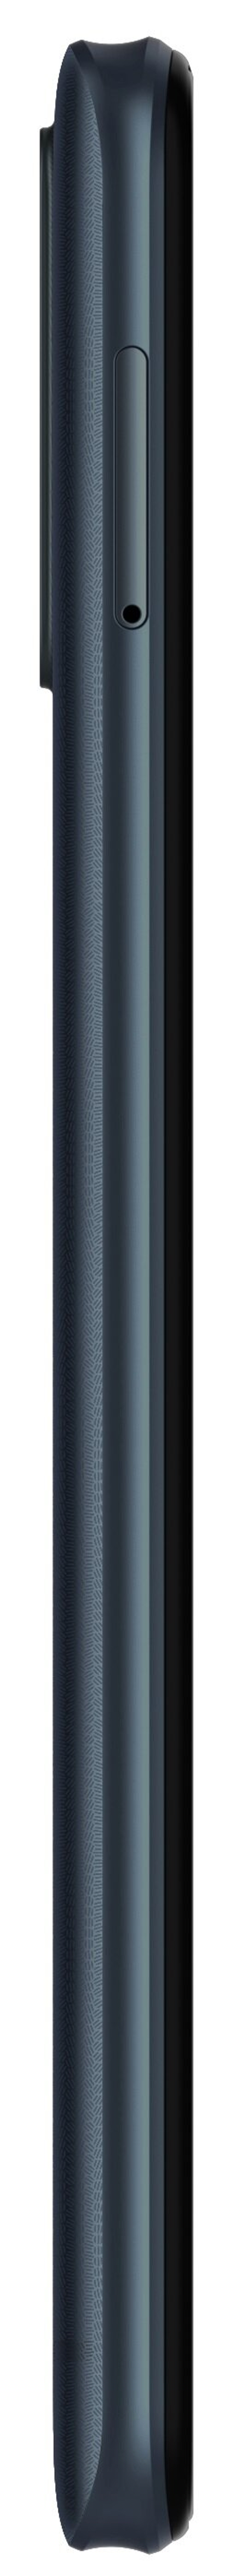 64 A53 ZTE SIM GB Dual Blade Blau Pro